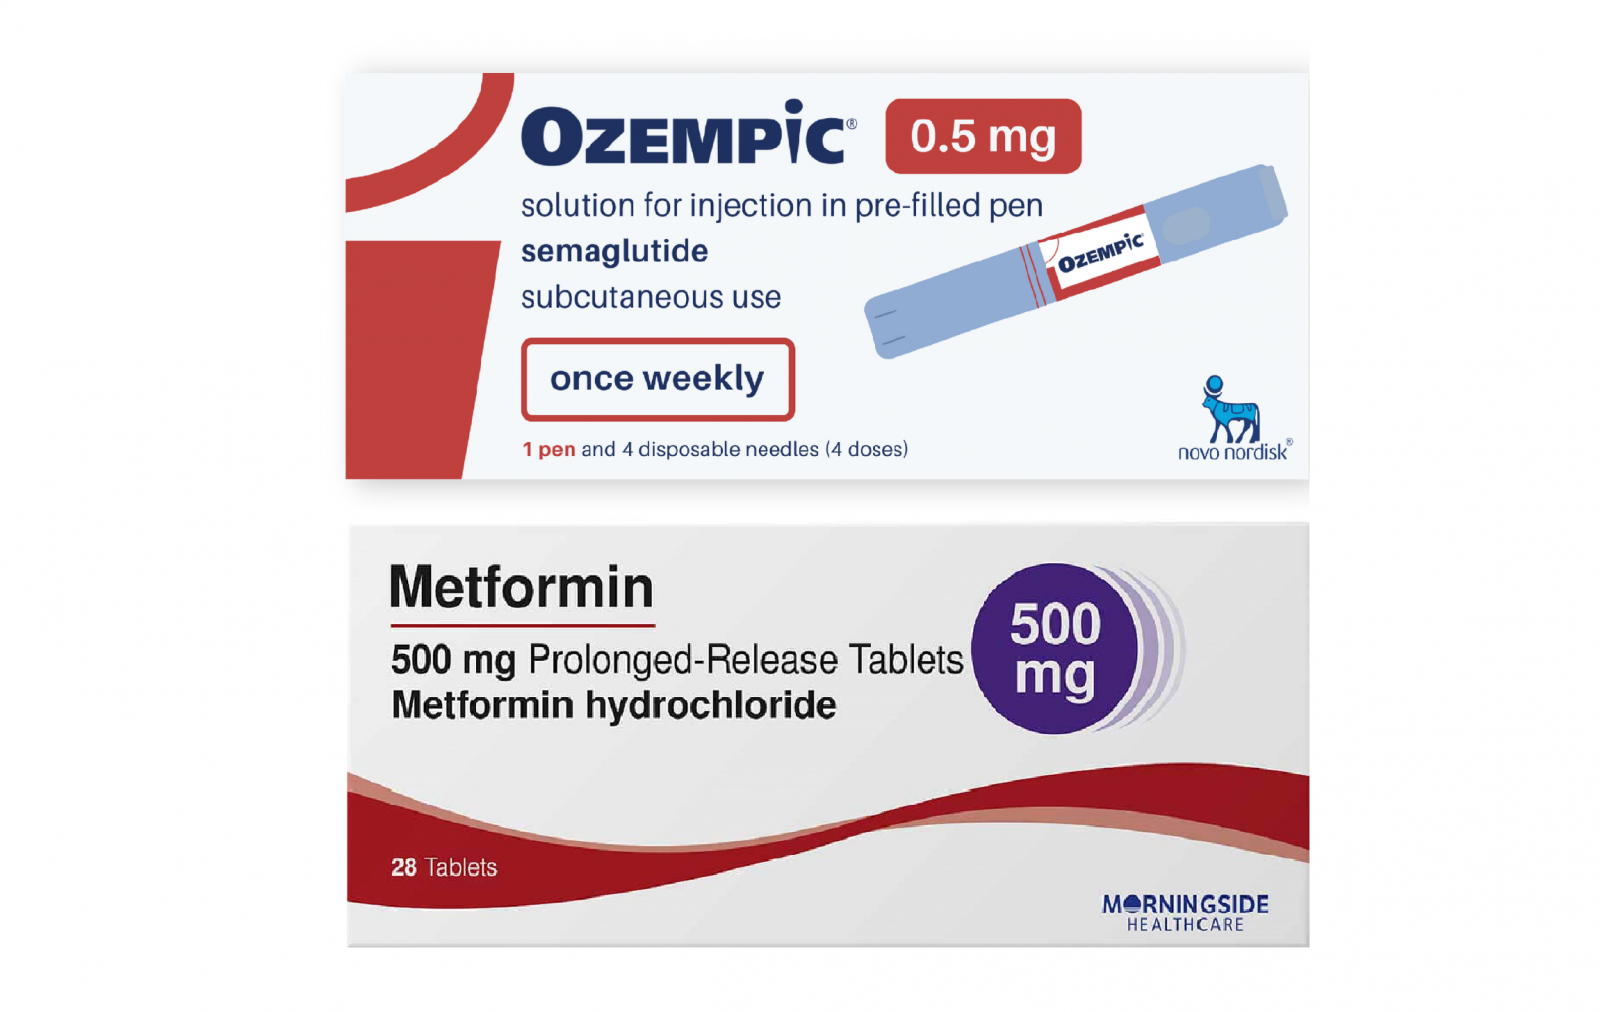 ozempic vs metformin